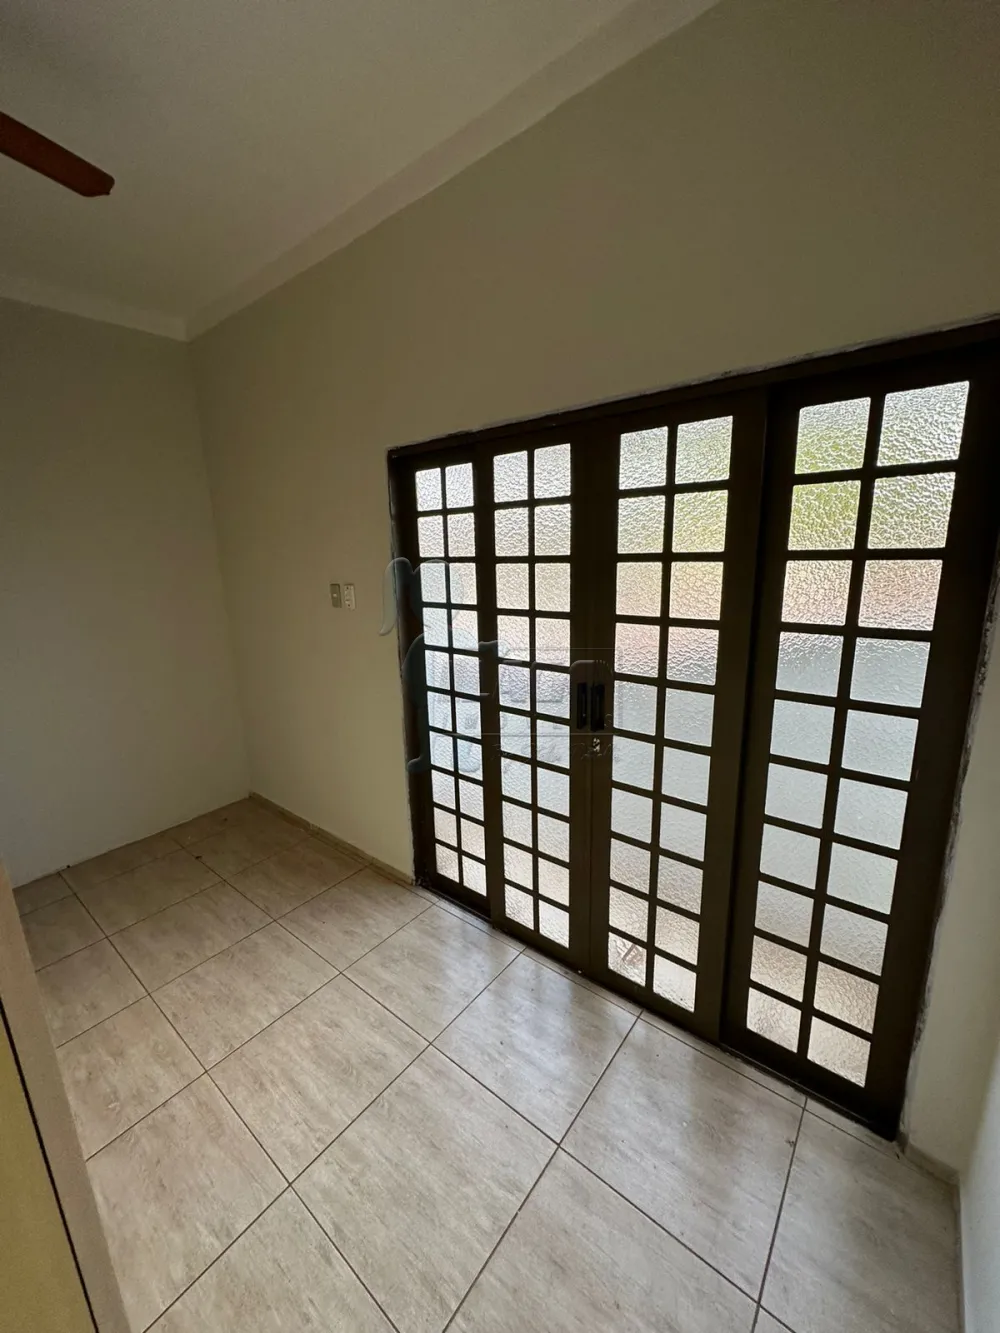 Comprar Casa / Padrão em Ribeirão Preto R$ 266.000,00 - Foto 1